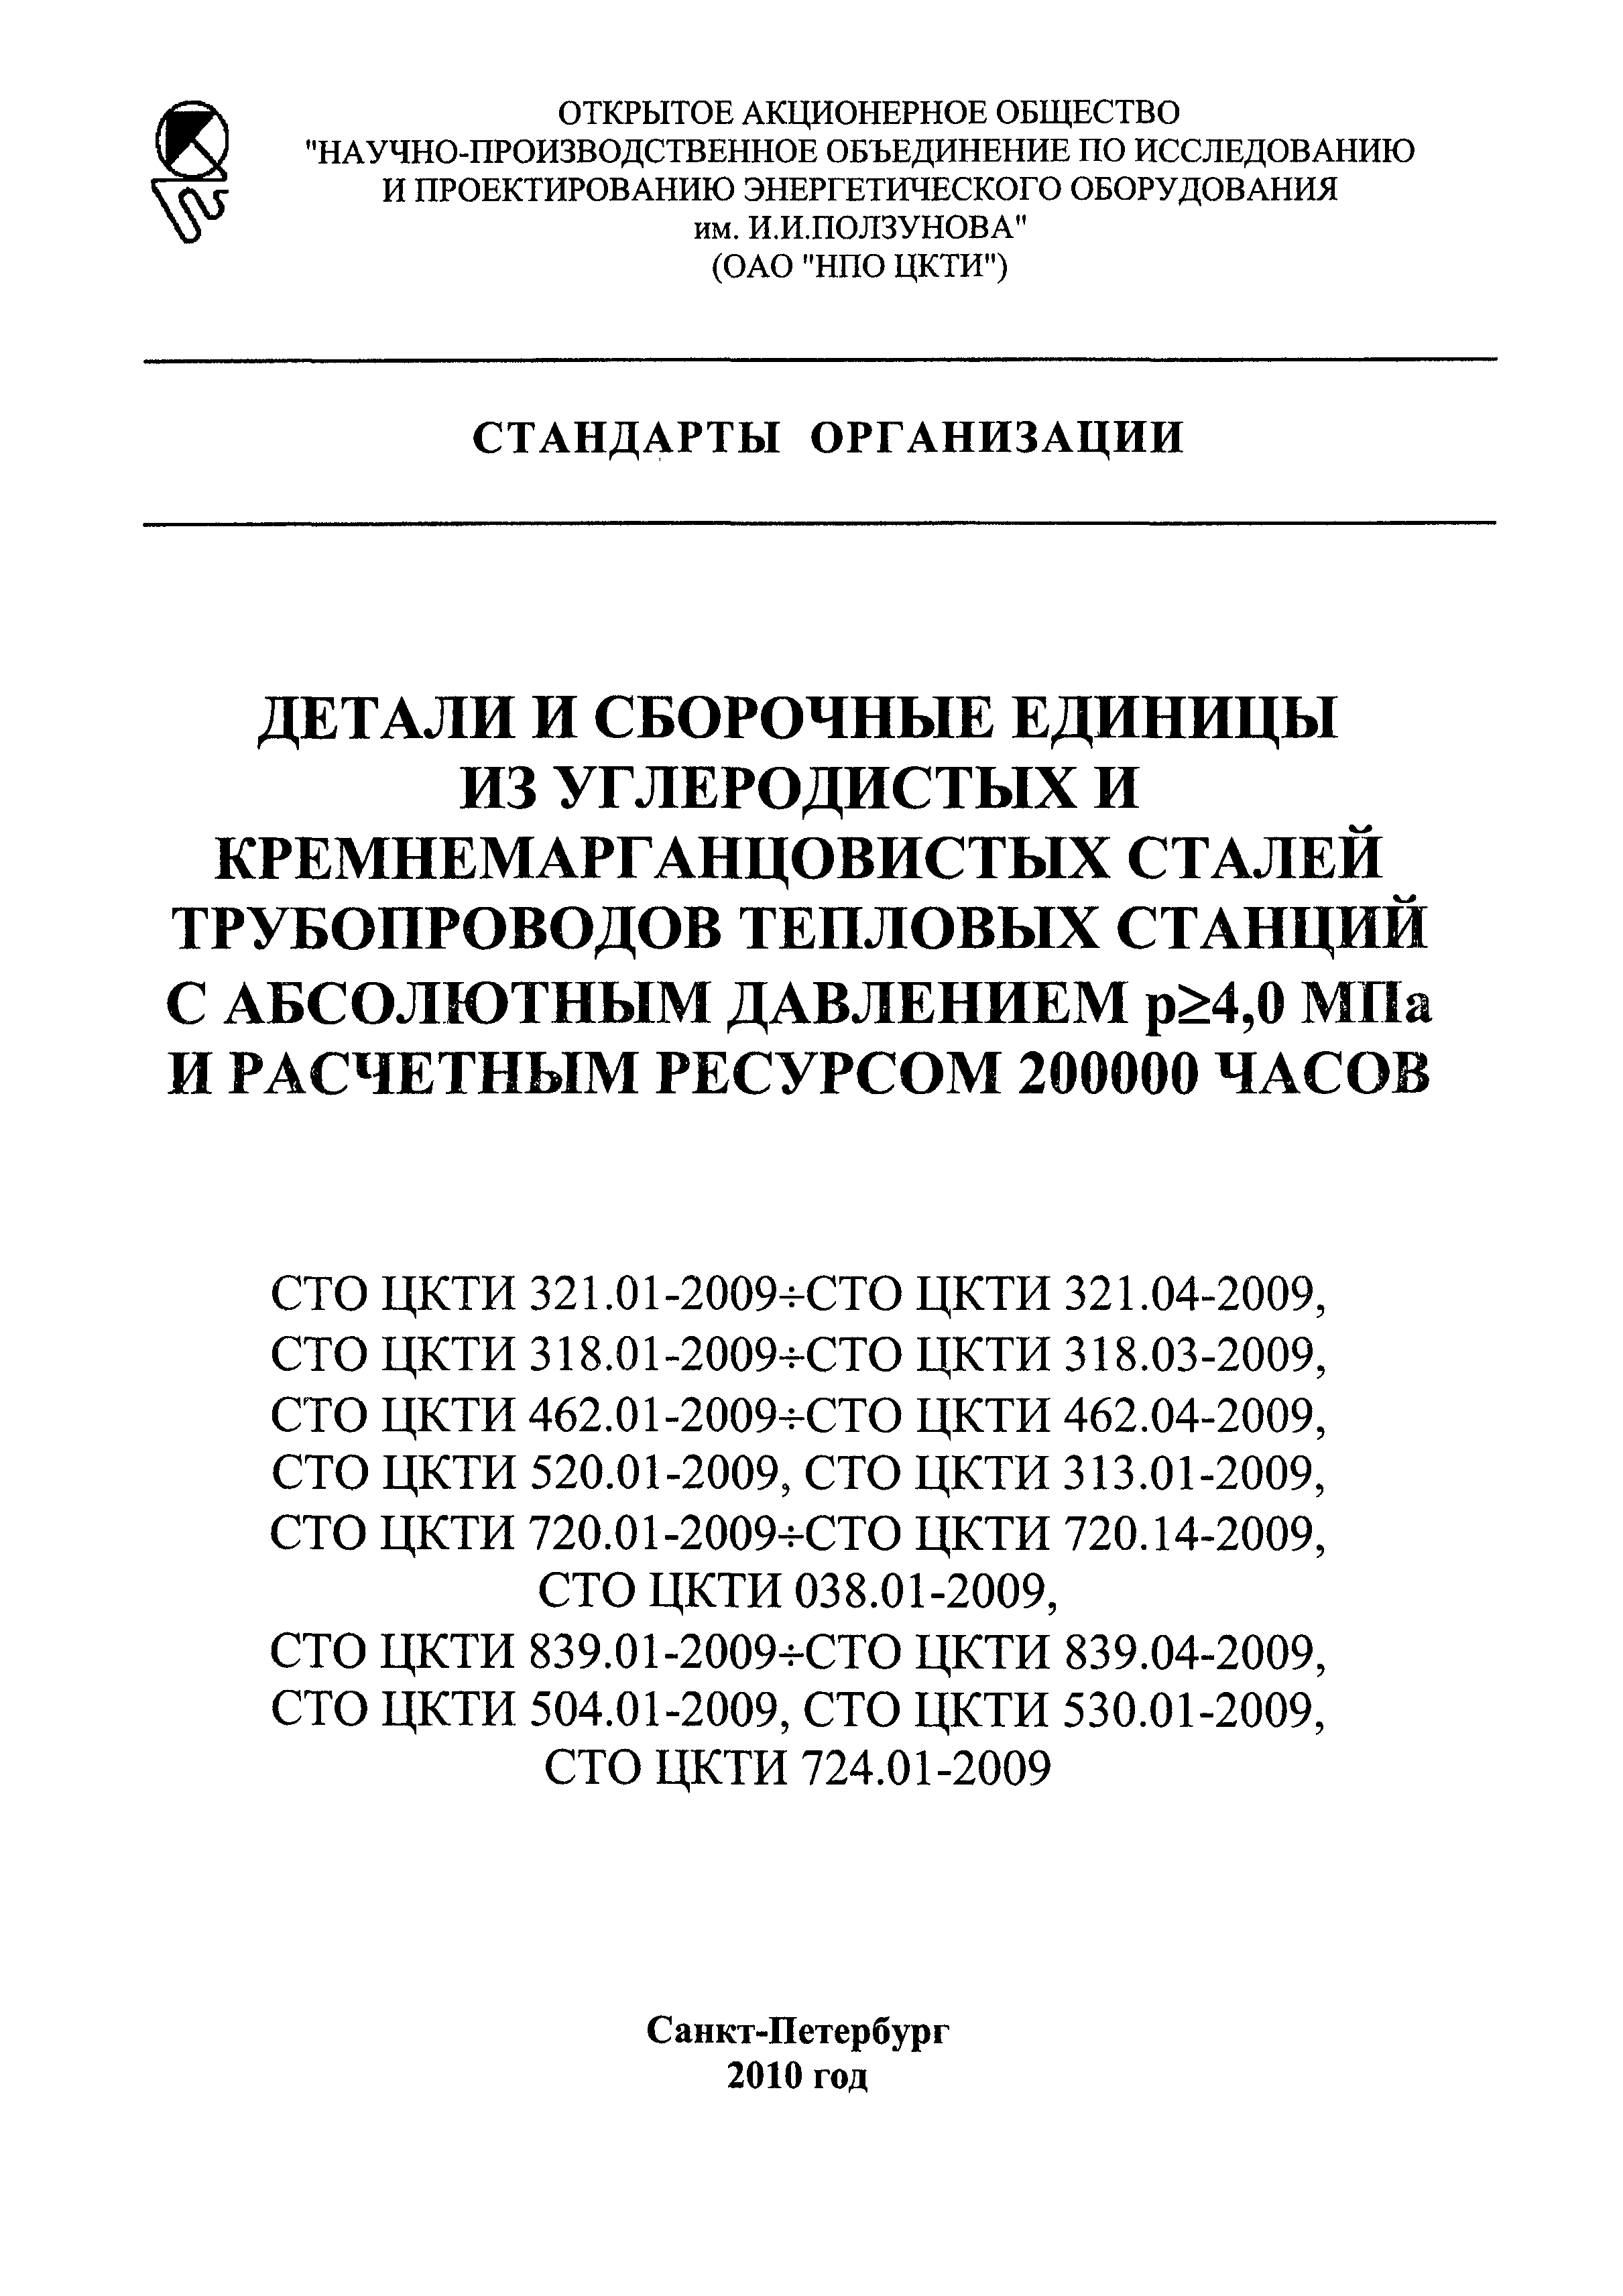 СТО ЦКТИ 720.11-2009